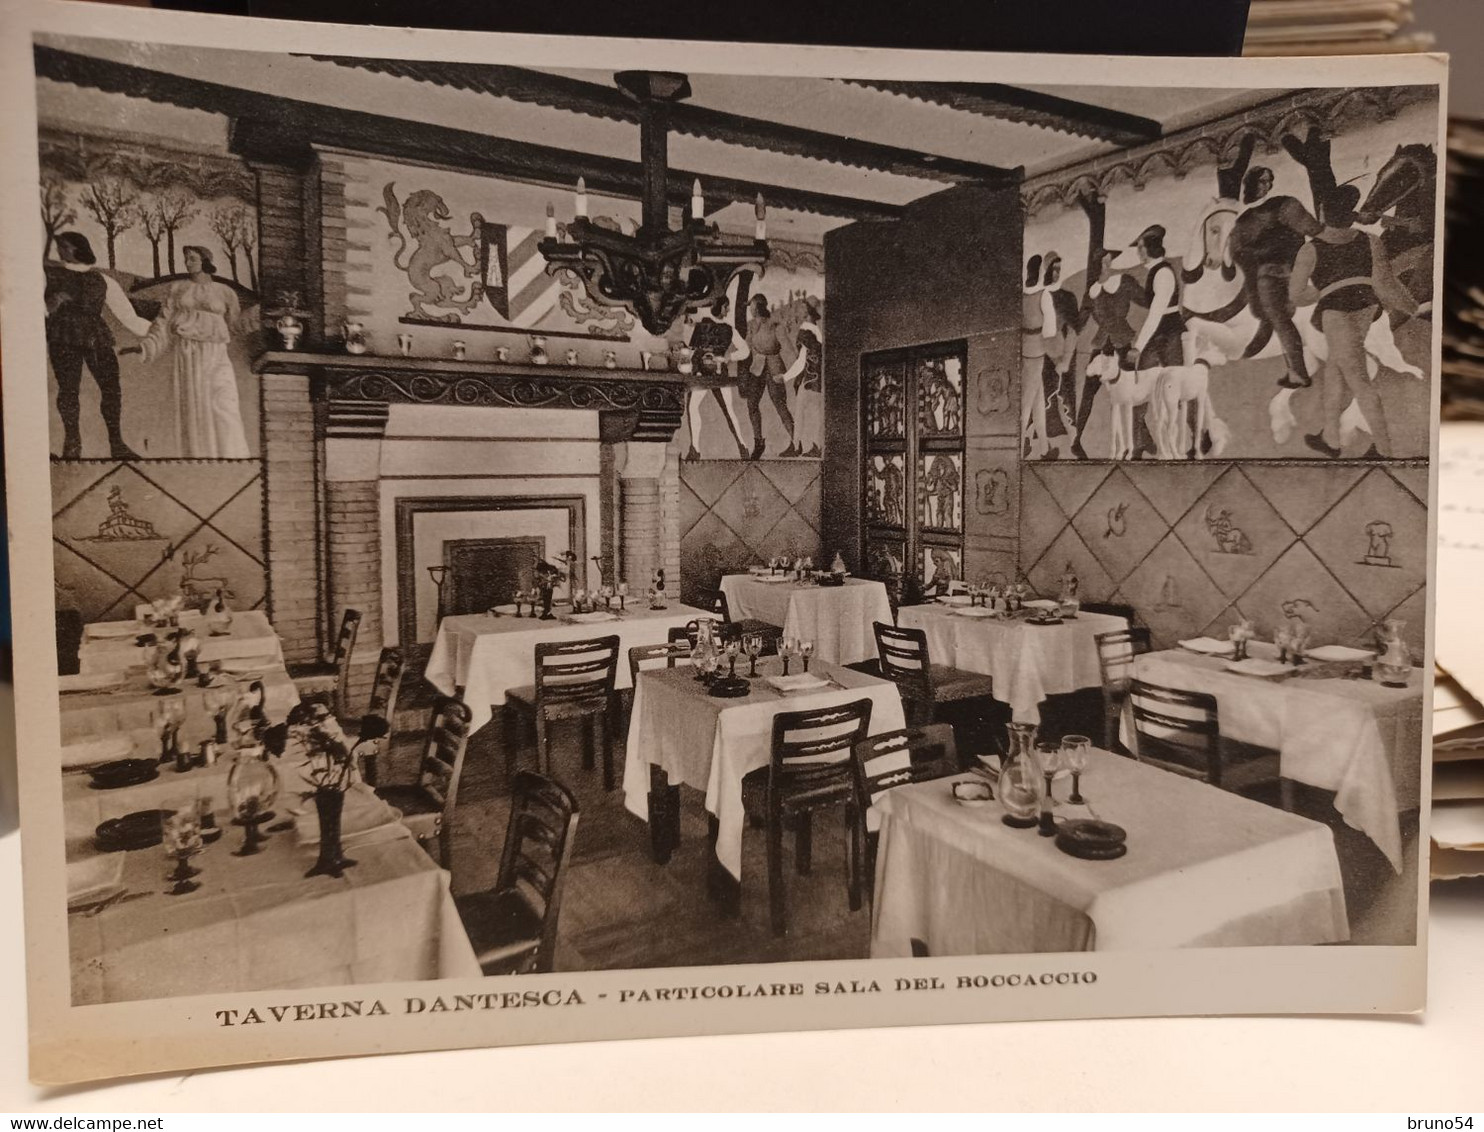 Cartolina Torino Taverna Dantesca Particolari Sala Del Boccaccio Via Nizza 5 ,1939 - Cafes, Hotels & Restaurants